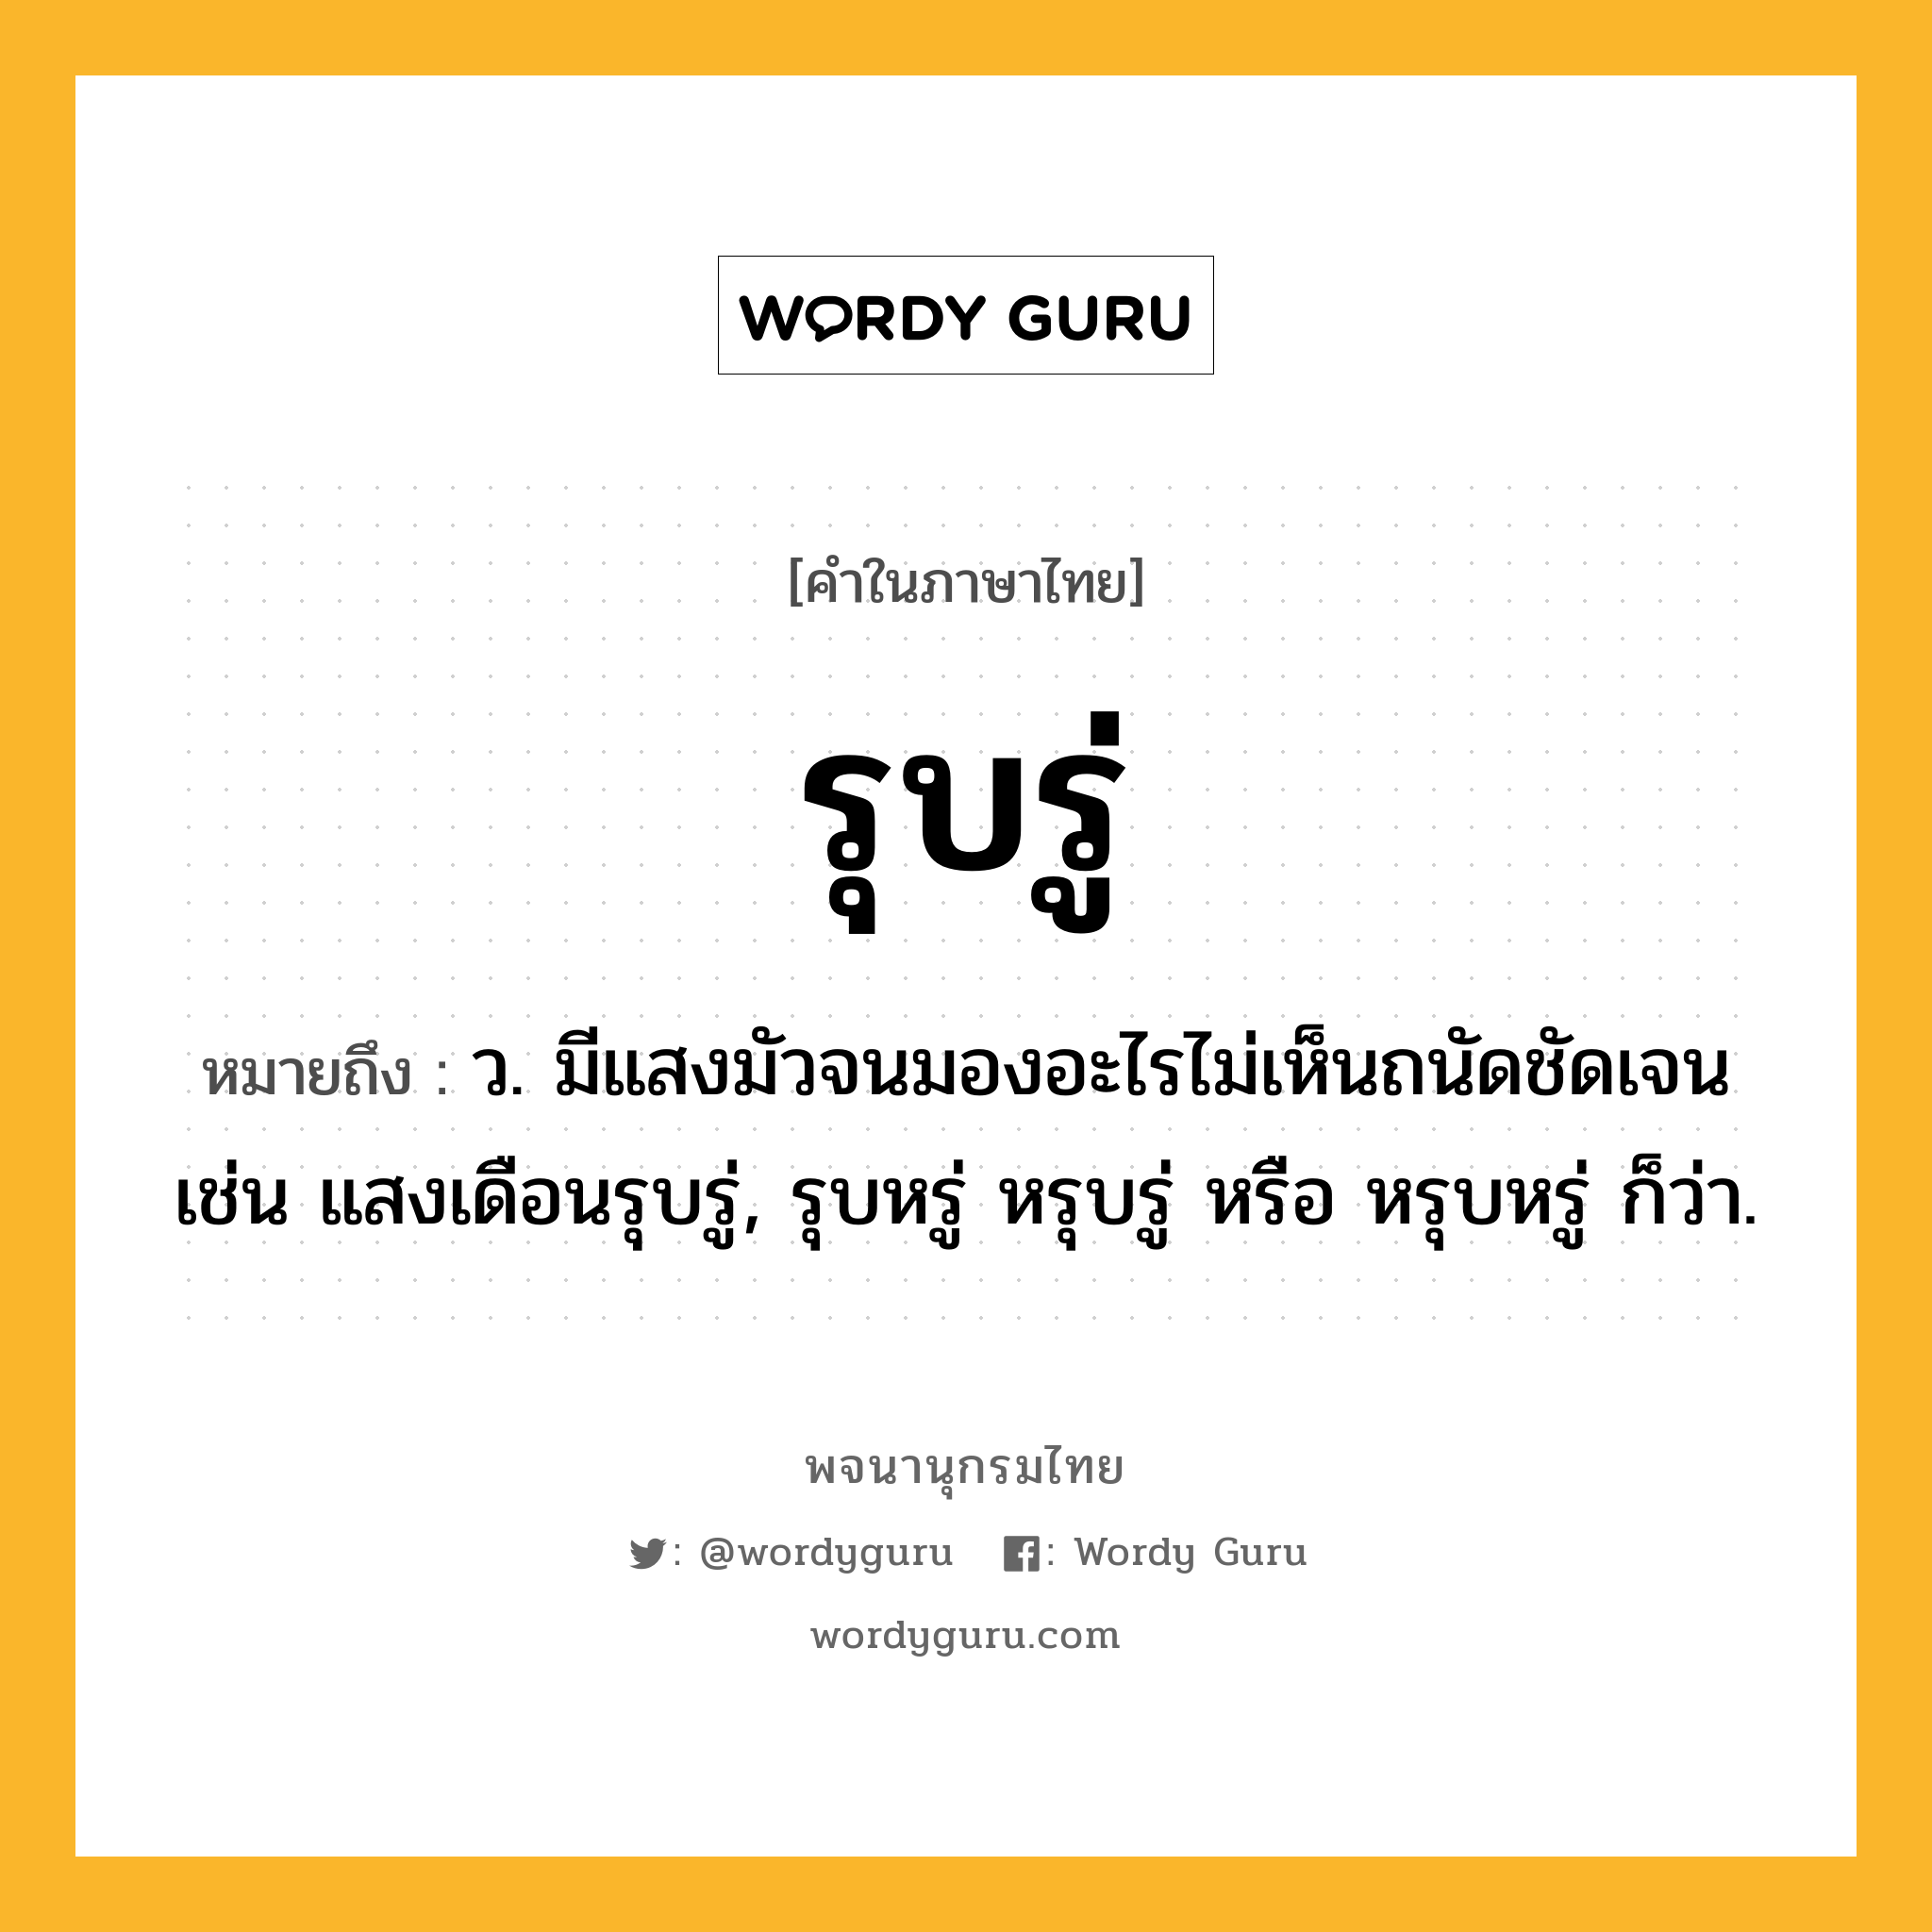 รุบรู่ หมายถึงอะไร?, คำในภาษาไทย รุบรู่ หมายถึง ว. มีแสงมัวจนมองอะไรไม่เห็นถนัดชัดเจน เช่น แสงเดือนรุบรู่, รุบหรู่ หรุบรู่ หรือ หรุบหรู่ ก็ว่า.